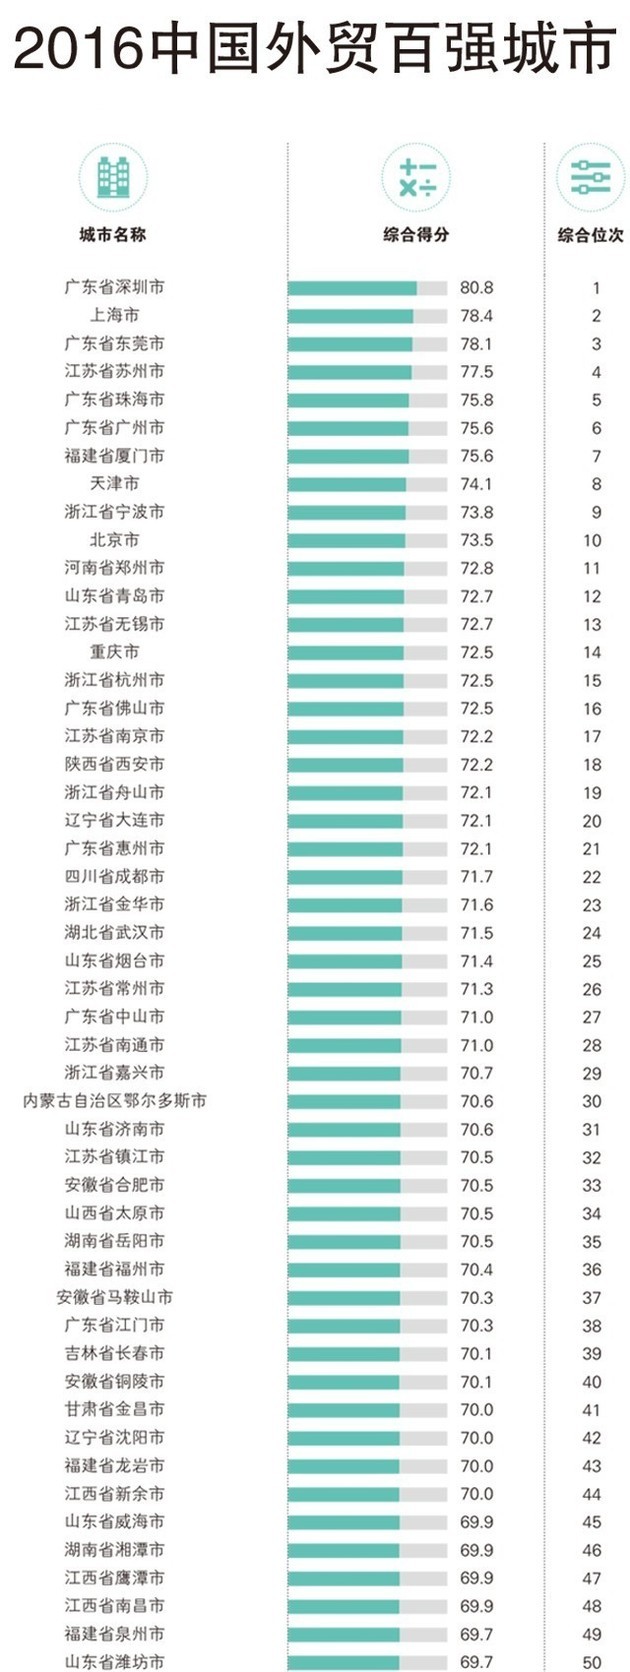 2016中国外贸百强城市出炉 深圳、上海名列前二(表)